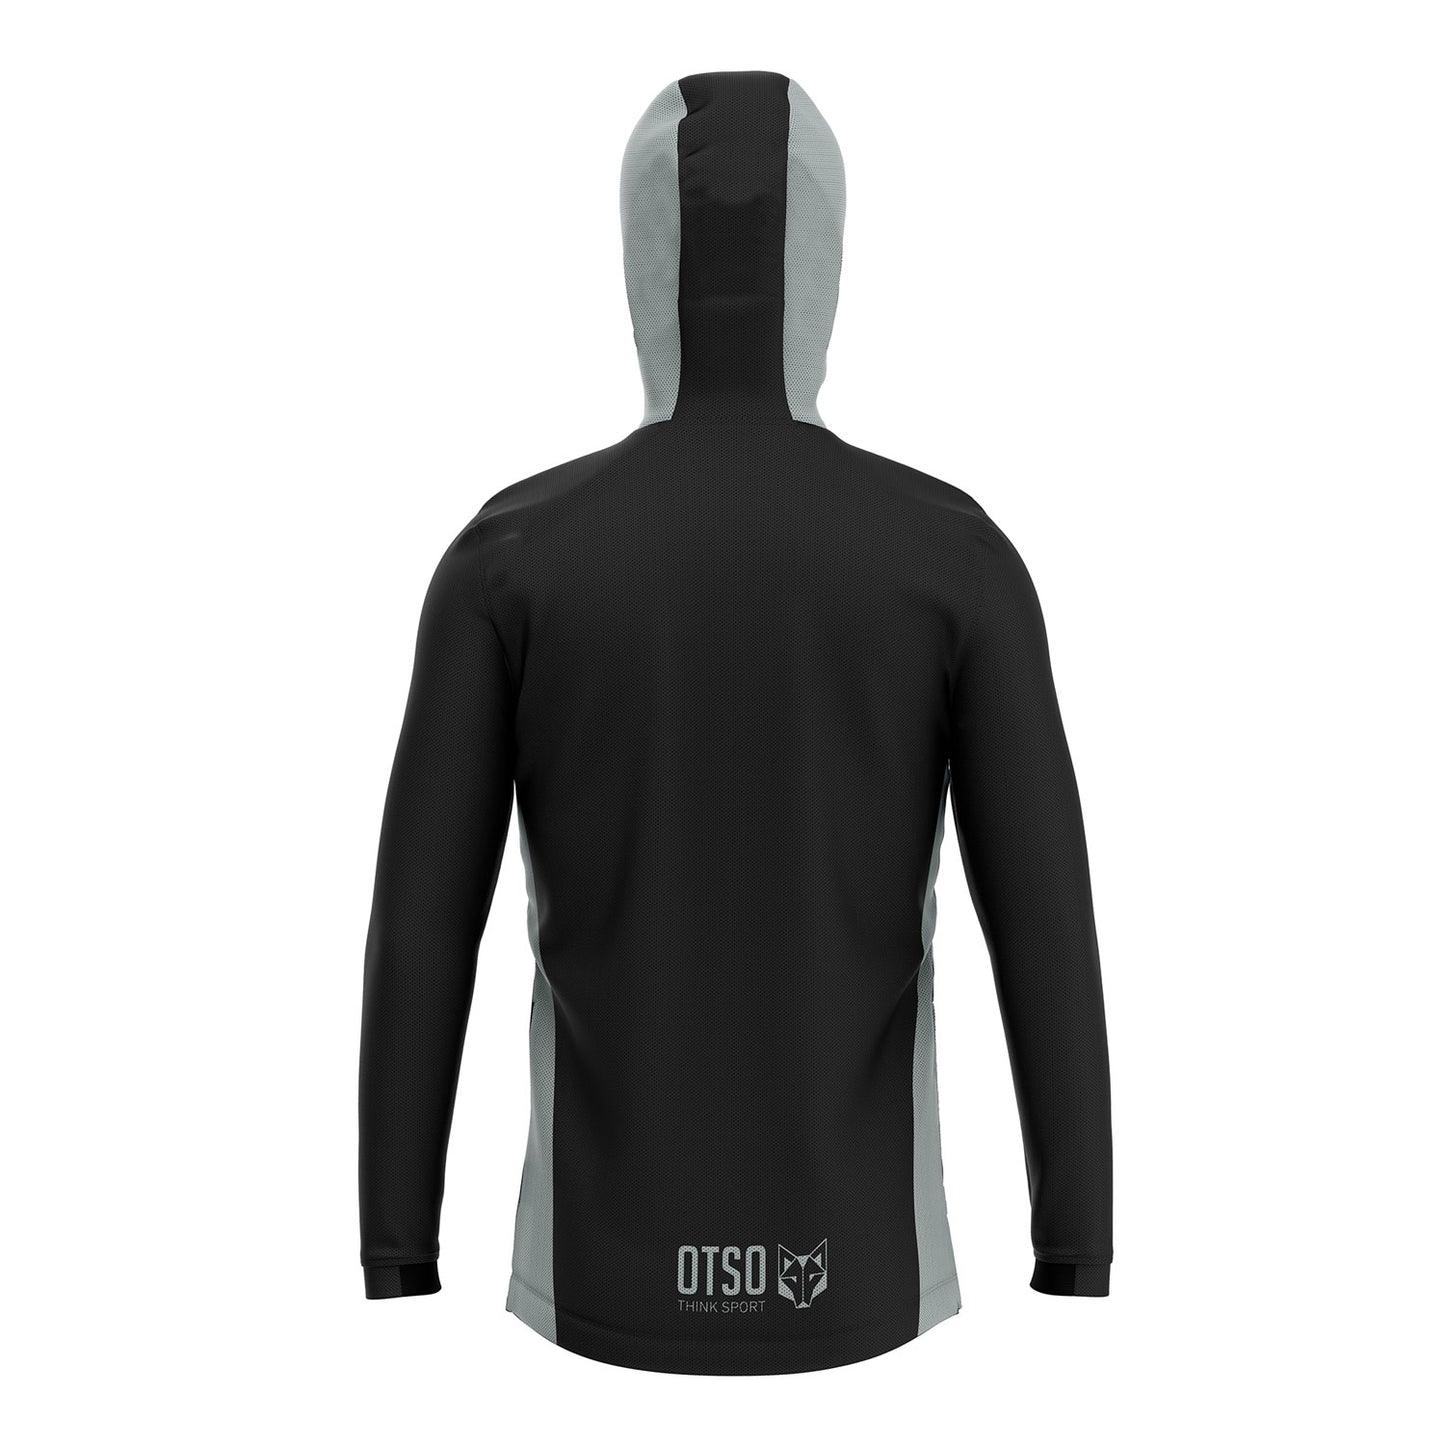 Unisex sport hoodie - Black & Grey